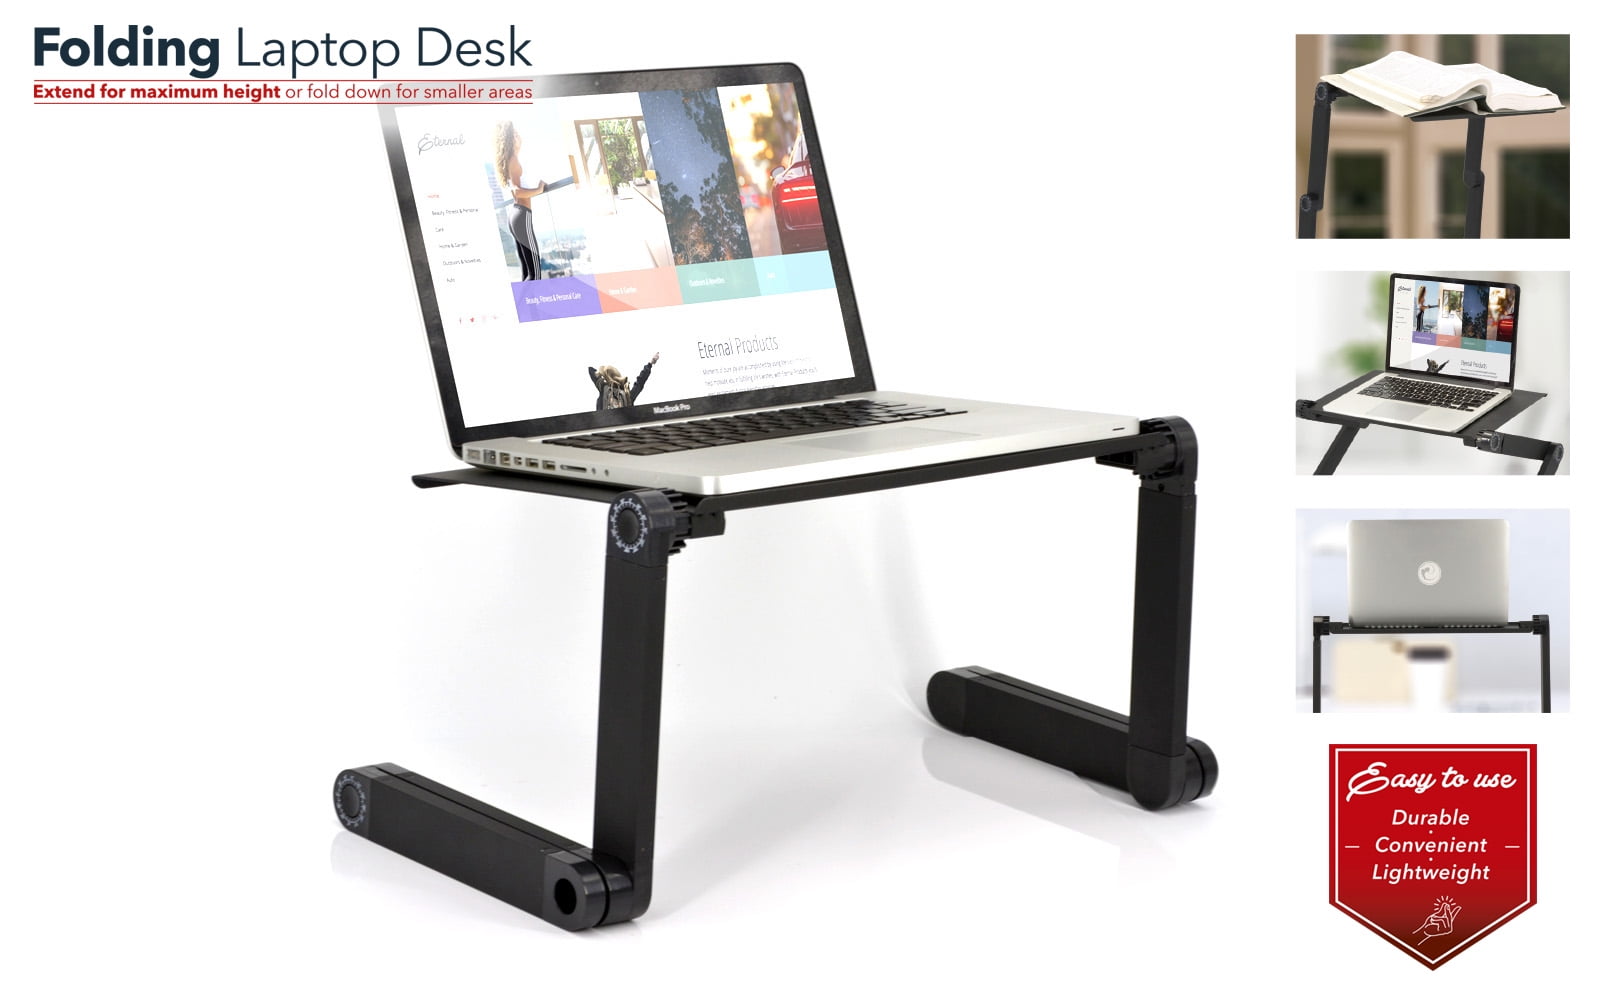 Elekin Folding Laptop Desk Review - TechWalls